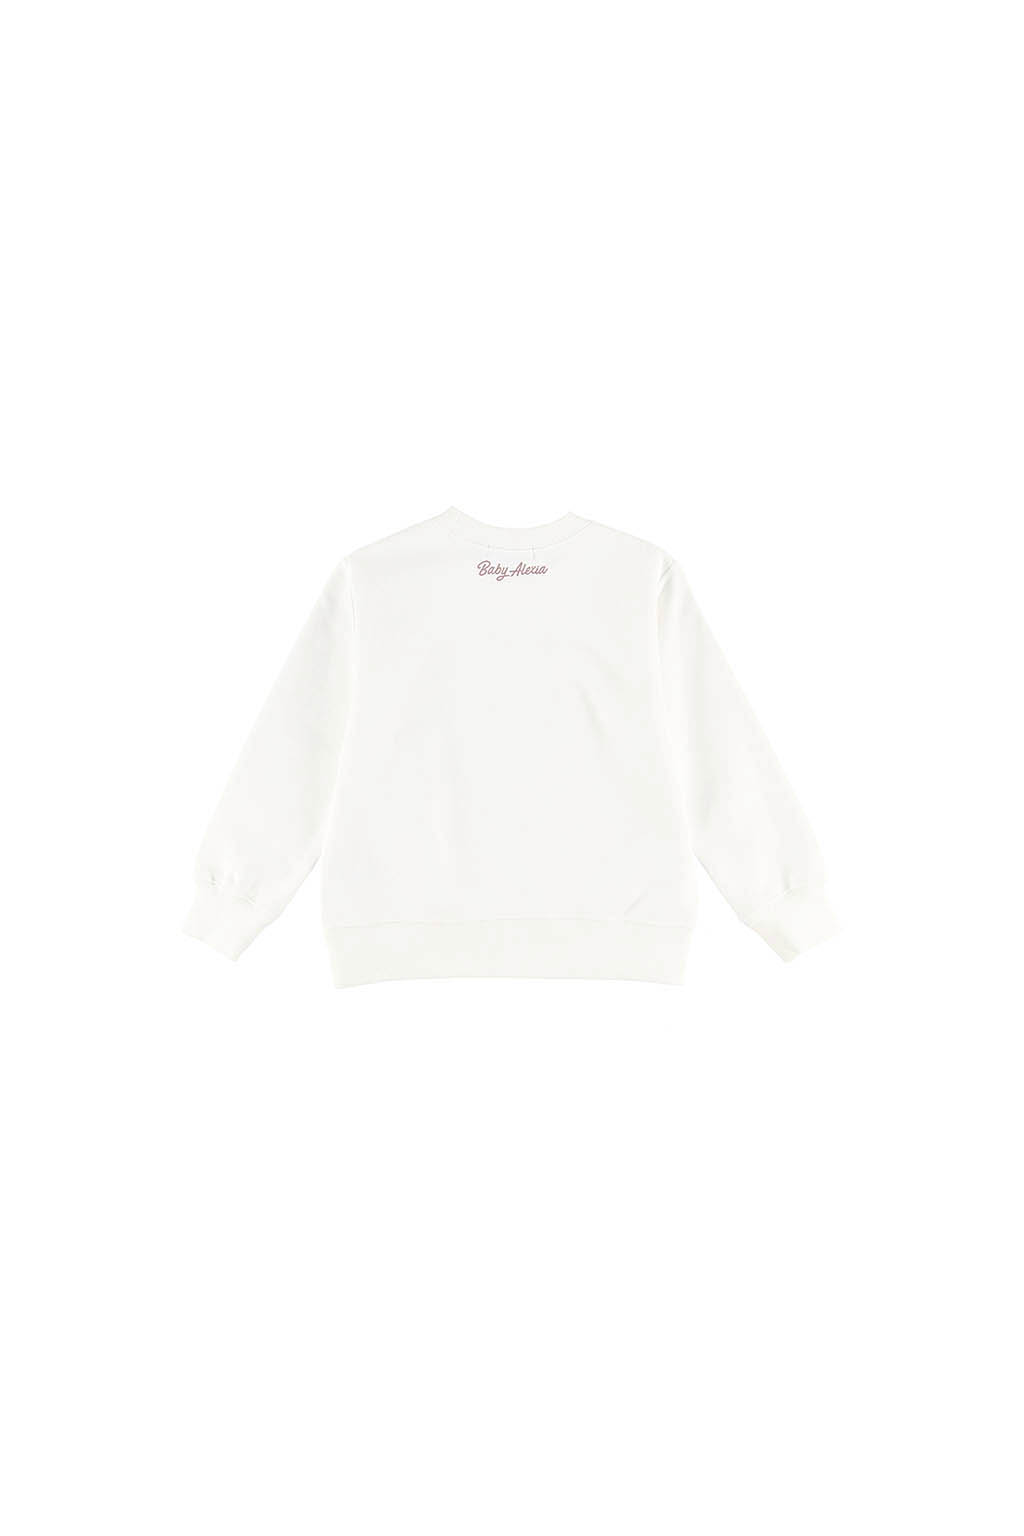 baby-alexia-palm-tree-sweatshirt-white-07